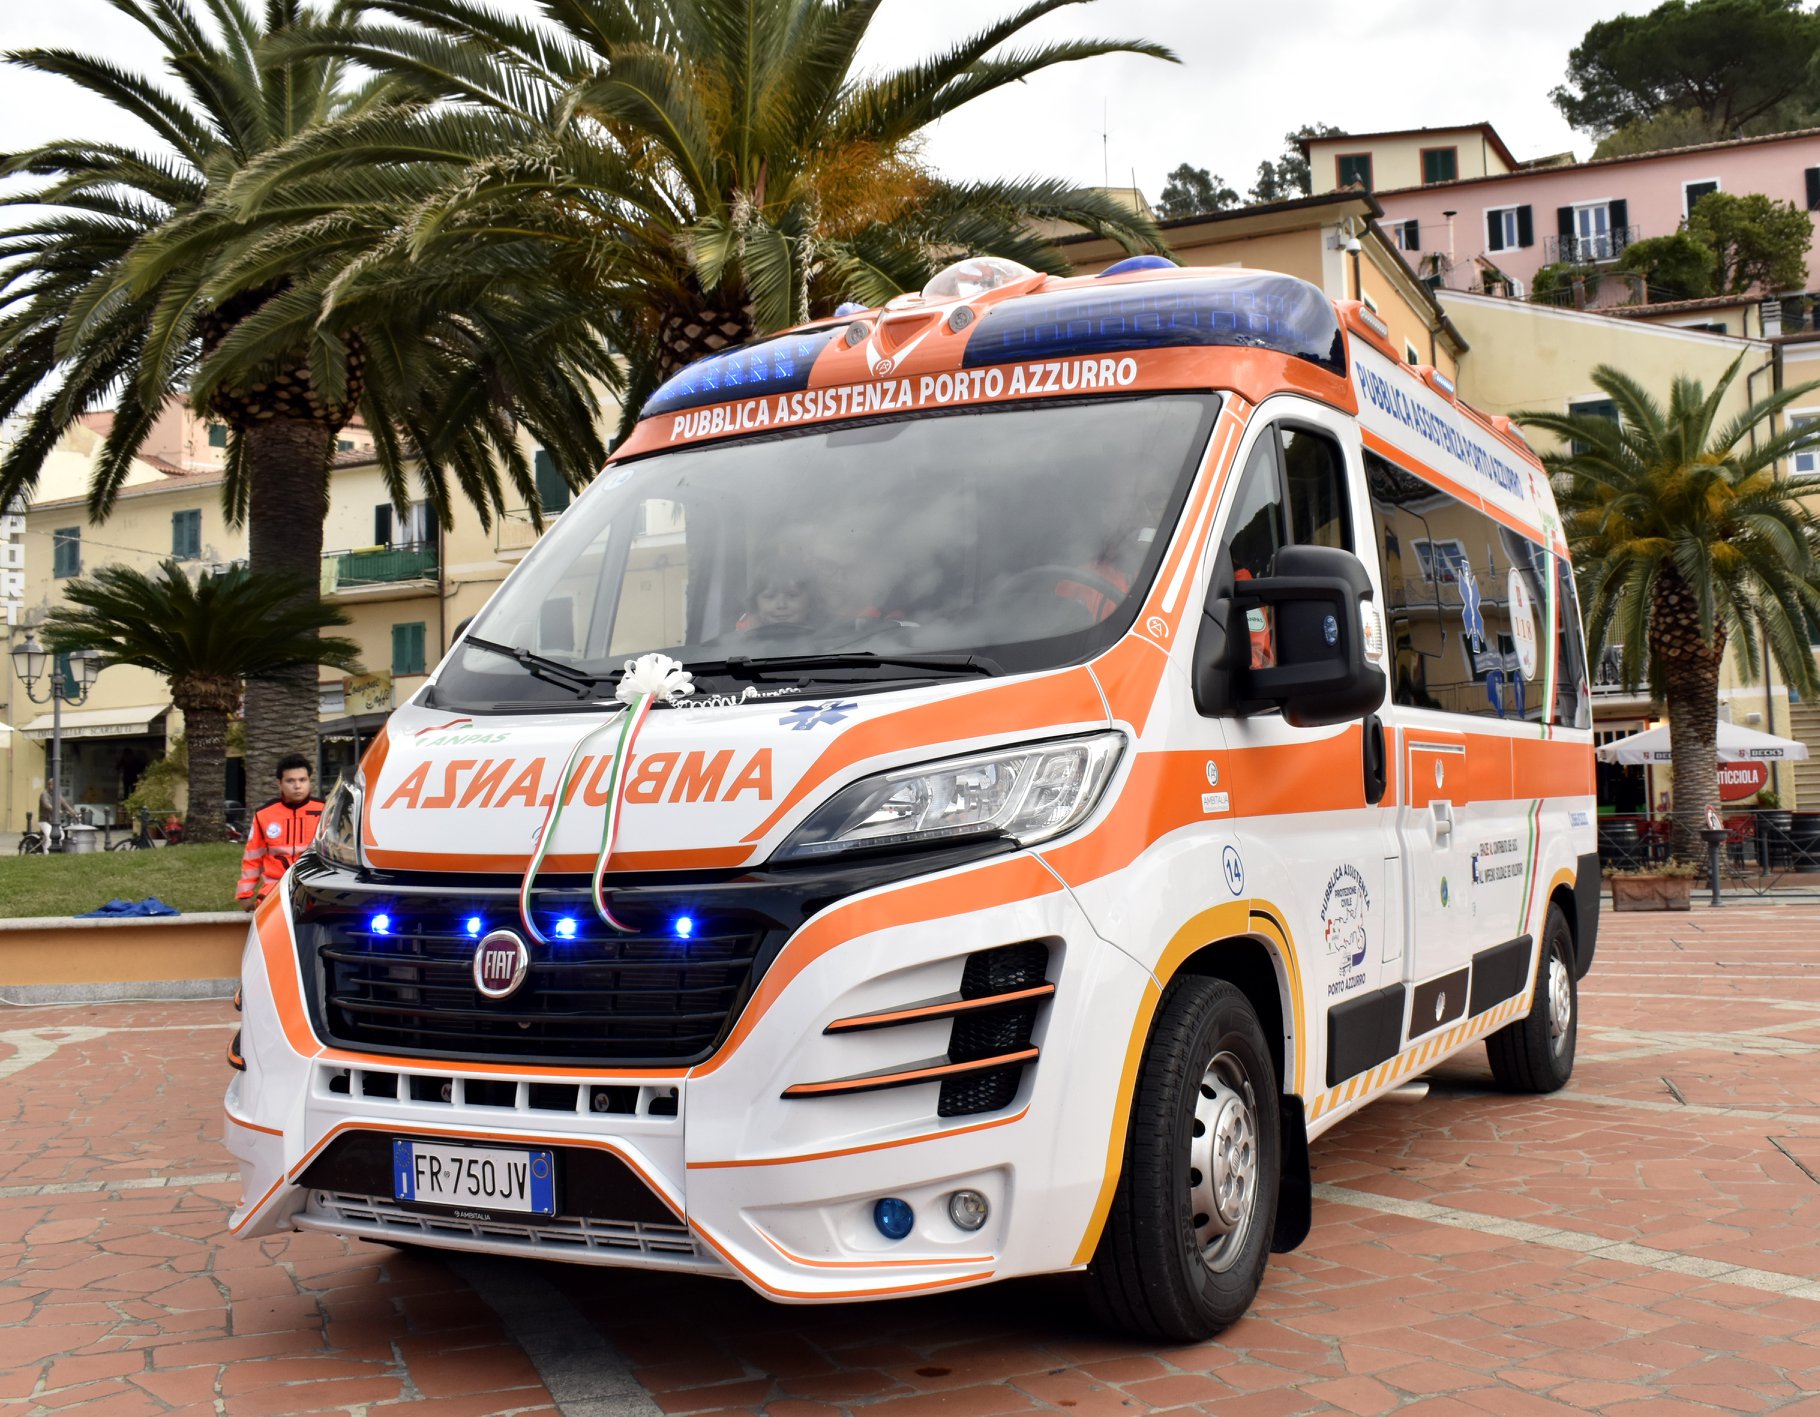 La nuova Ambulanza 118 della Pubblica Assistenza Porto Azzurro